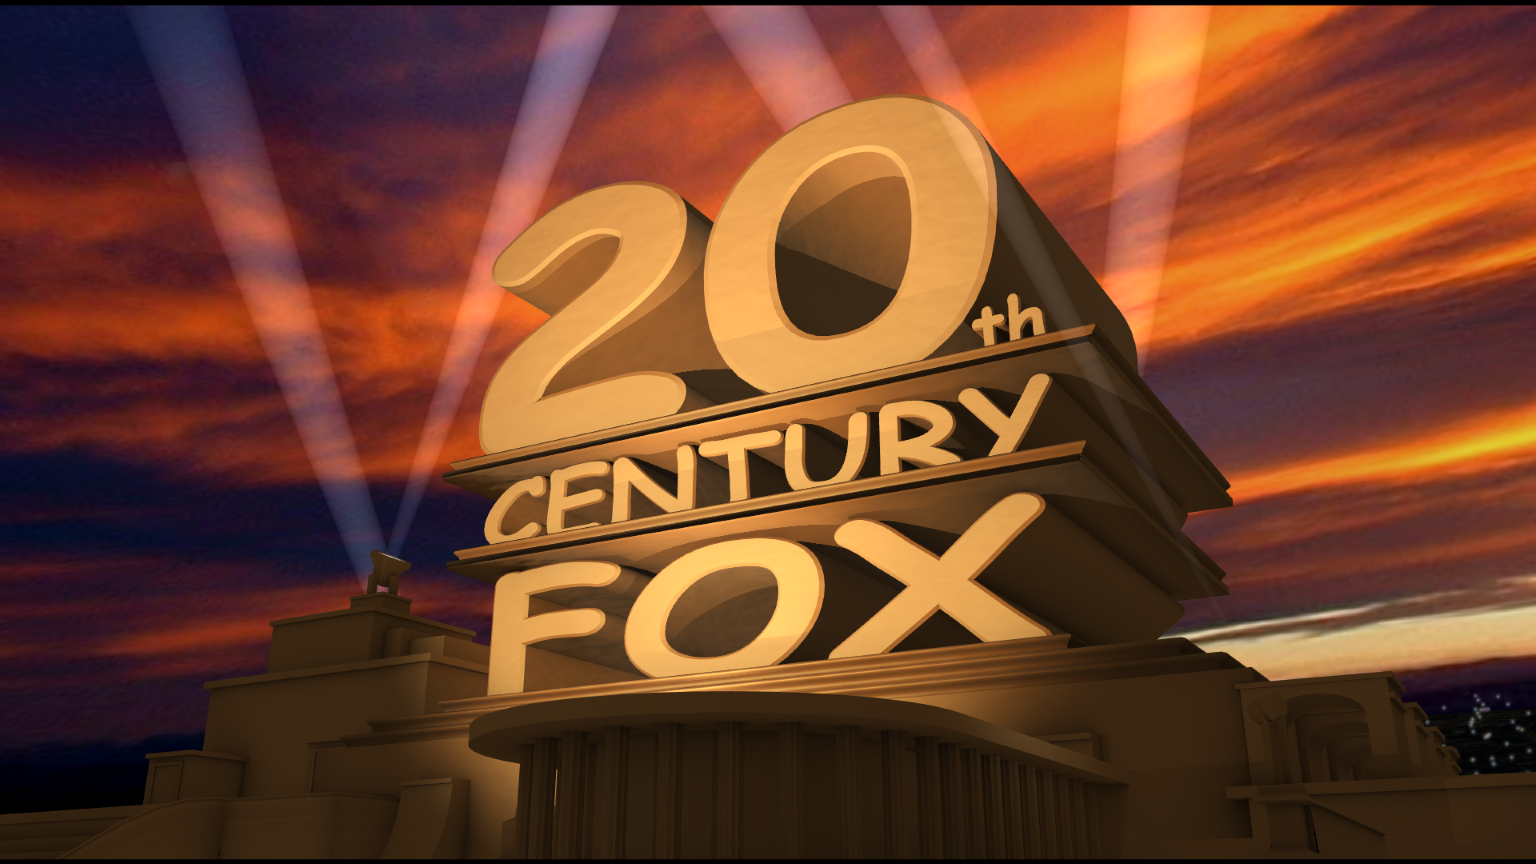 11 декабря 20 лет. Киностудия двадцатый век Фокс. Интро в стиле 20th Century Fox. 20 Лет выпуска. Встреча выпускников 20 лет.